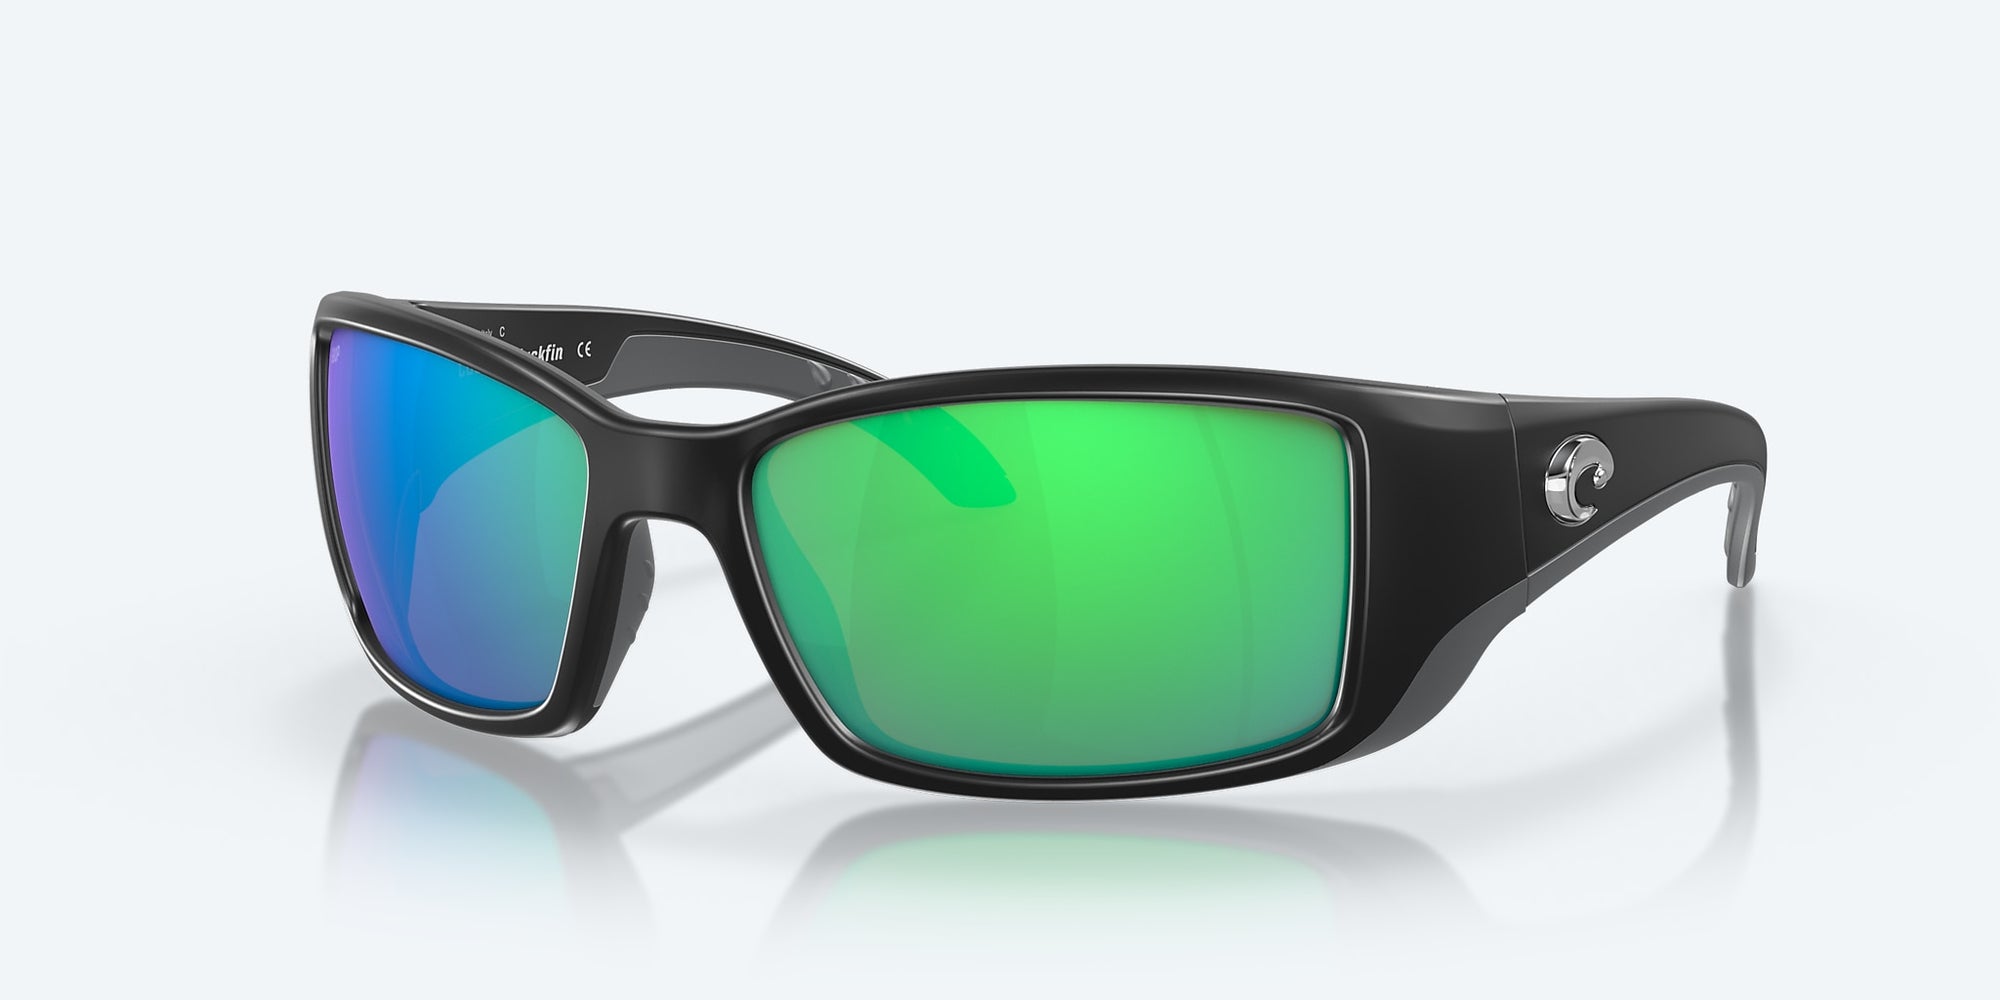 Costa Blackfin Sunglasses